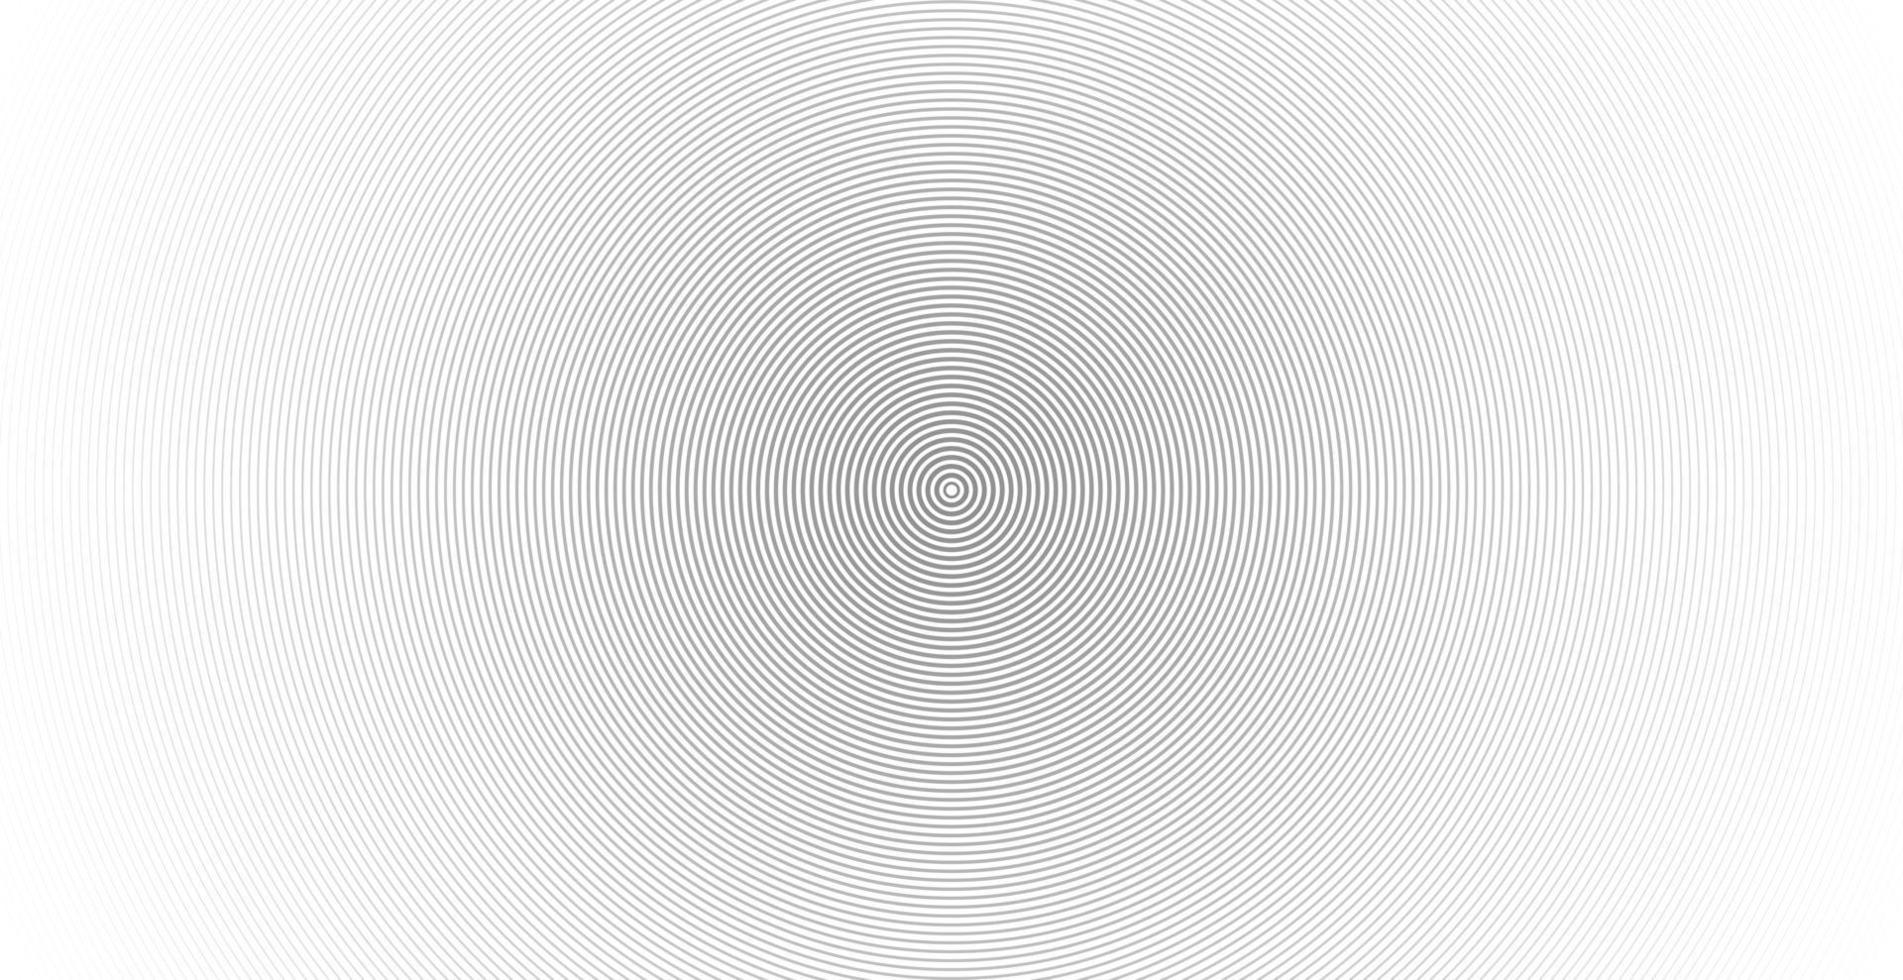 motif de ligne abstraite cercle concentrique onde sonore vecteur